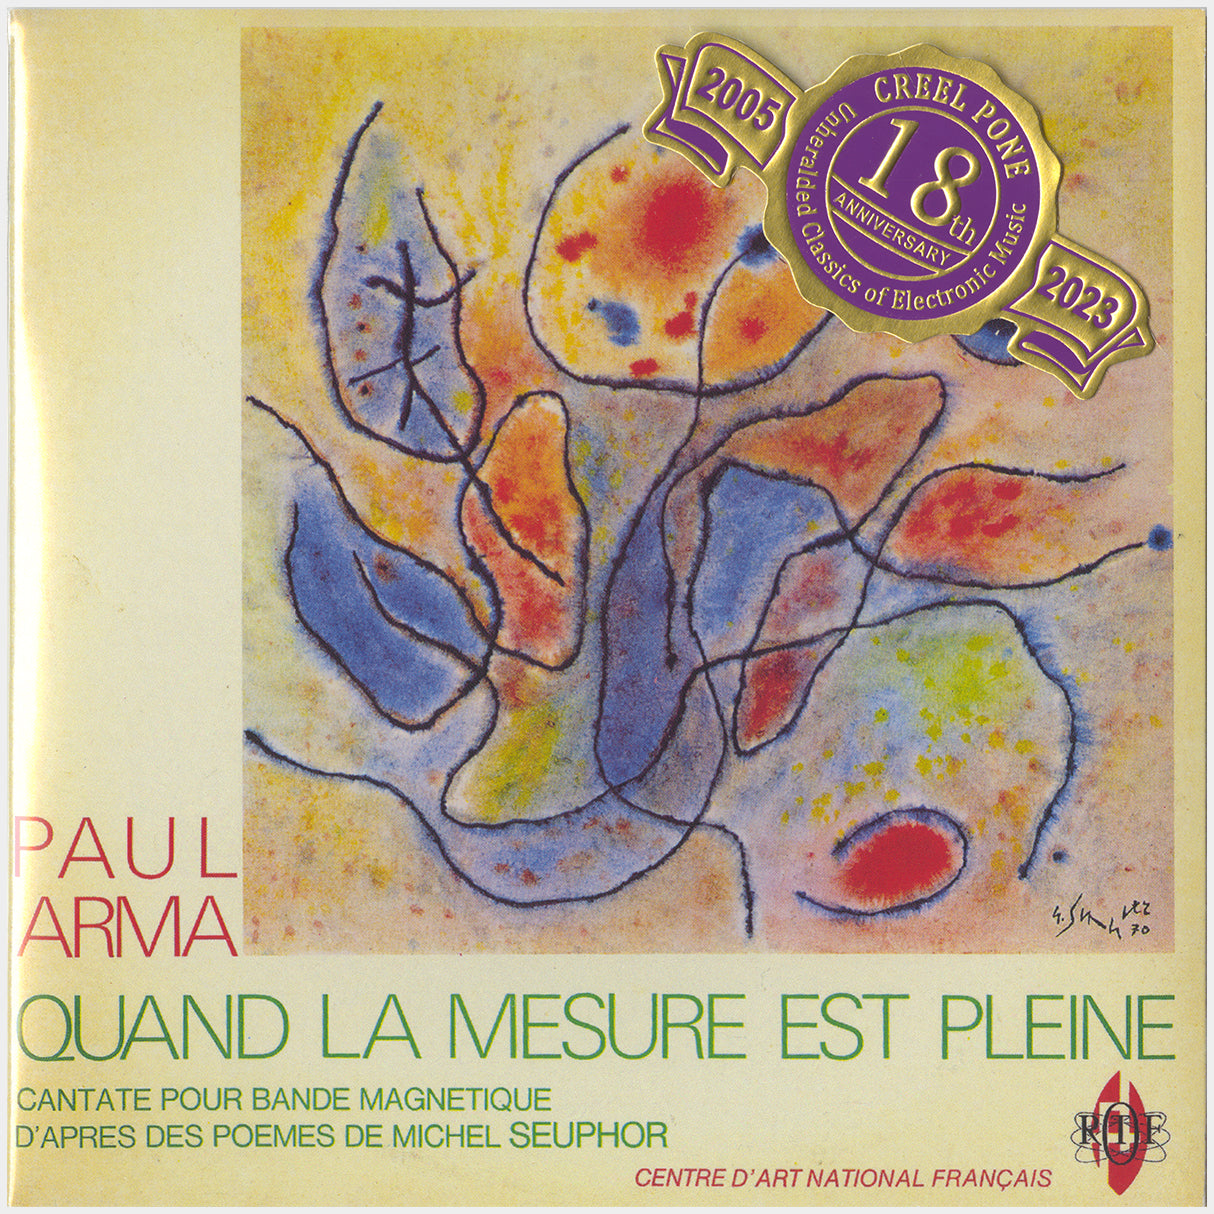 [CP 286 CD] Paul Arma; Quand La Mesure Est Pleine, Cantate Pour Bande Magnétique, Sept Variations Spatiophoniques